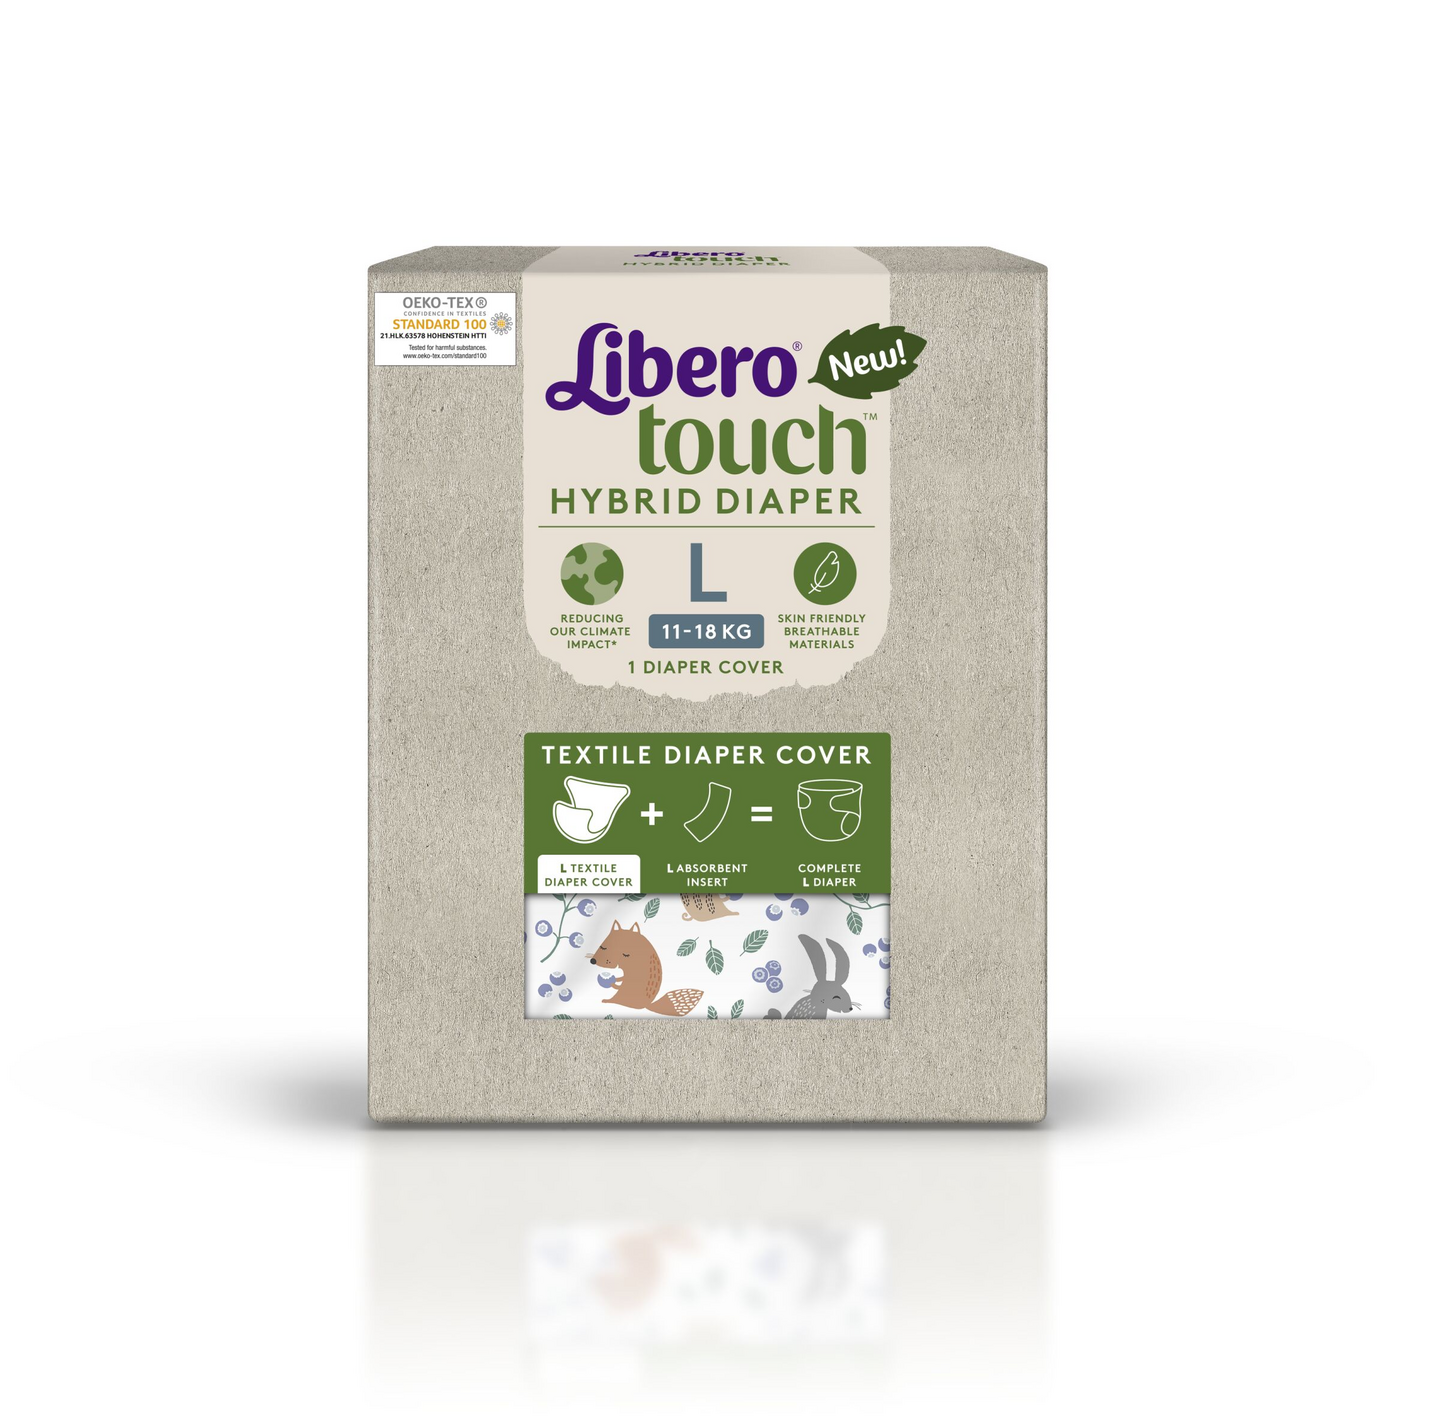 Libero Touch Hybrid pestävä kankainen vaippahousu 1kpl 11-18kg koko L